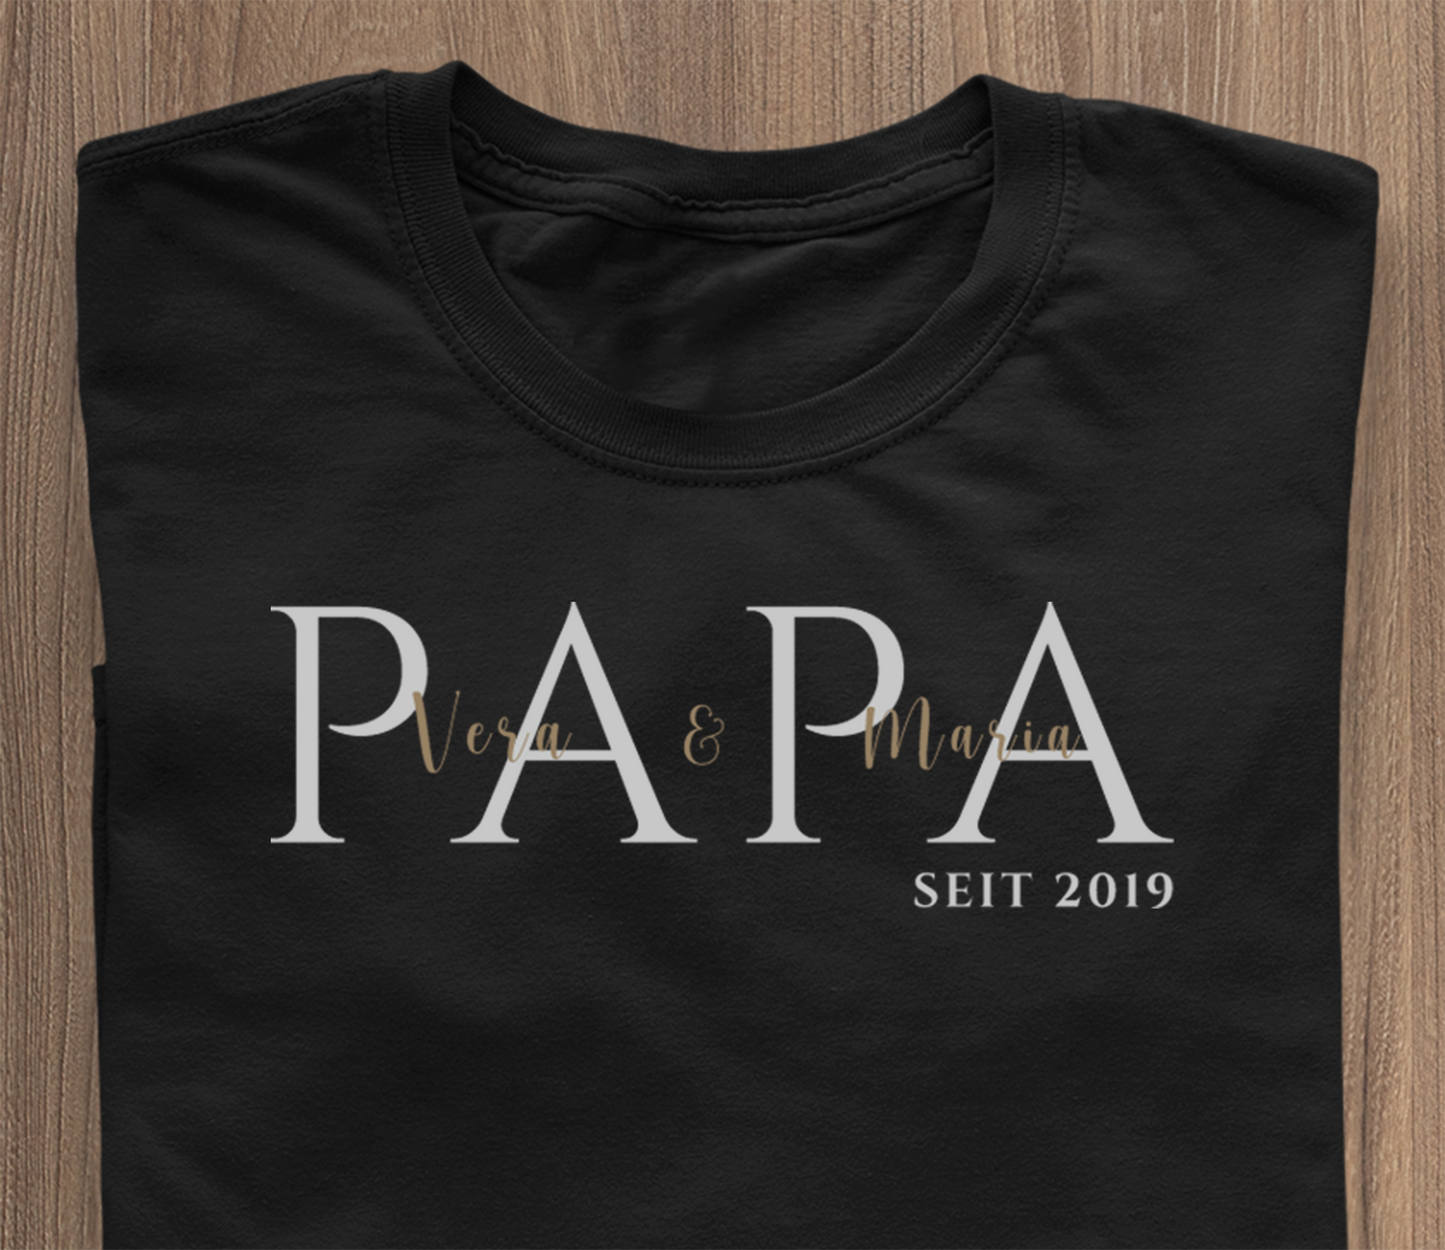 PAPA zënter ... T-Shirt schwaarz - Numm personaliséierbar